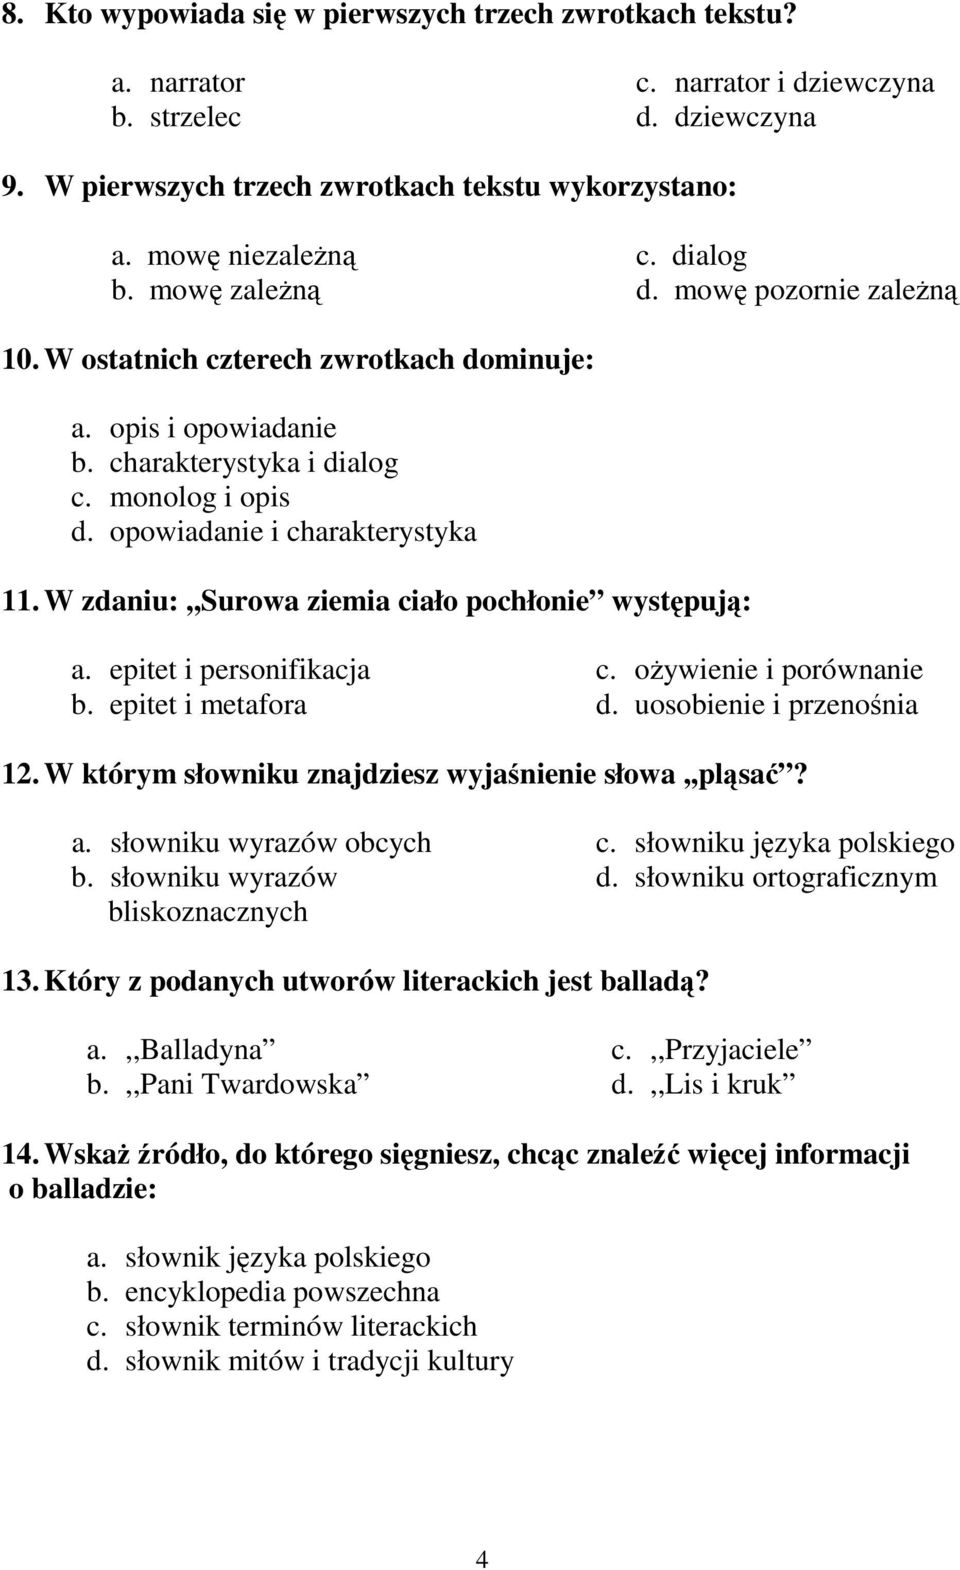 Test z języka polskiego - PDF Free Download